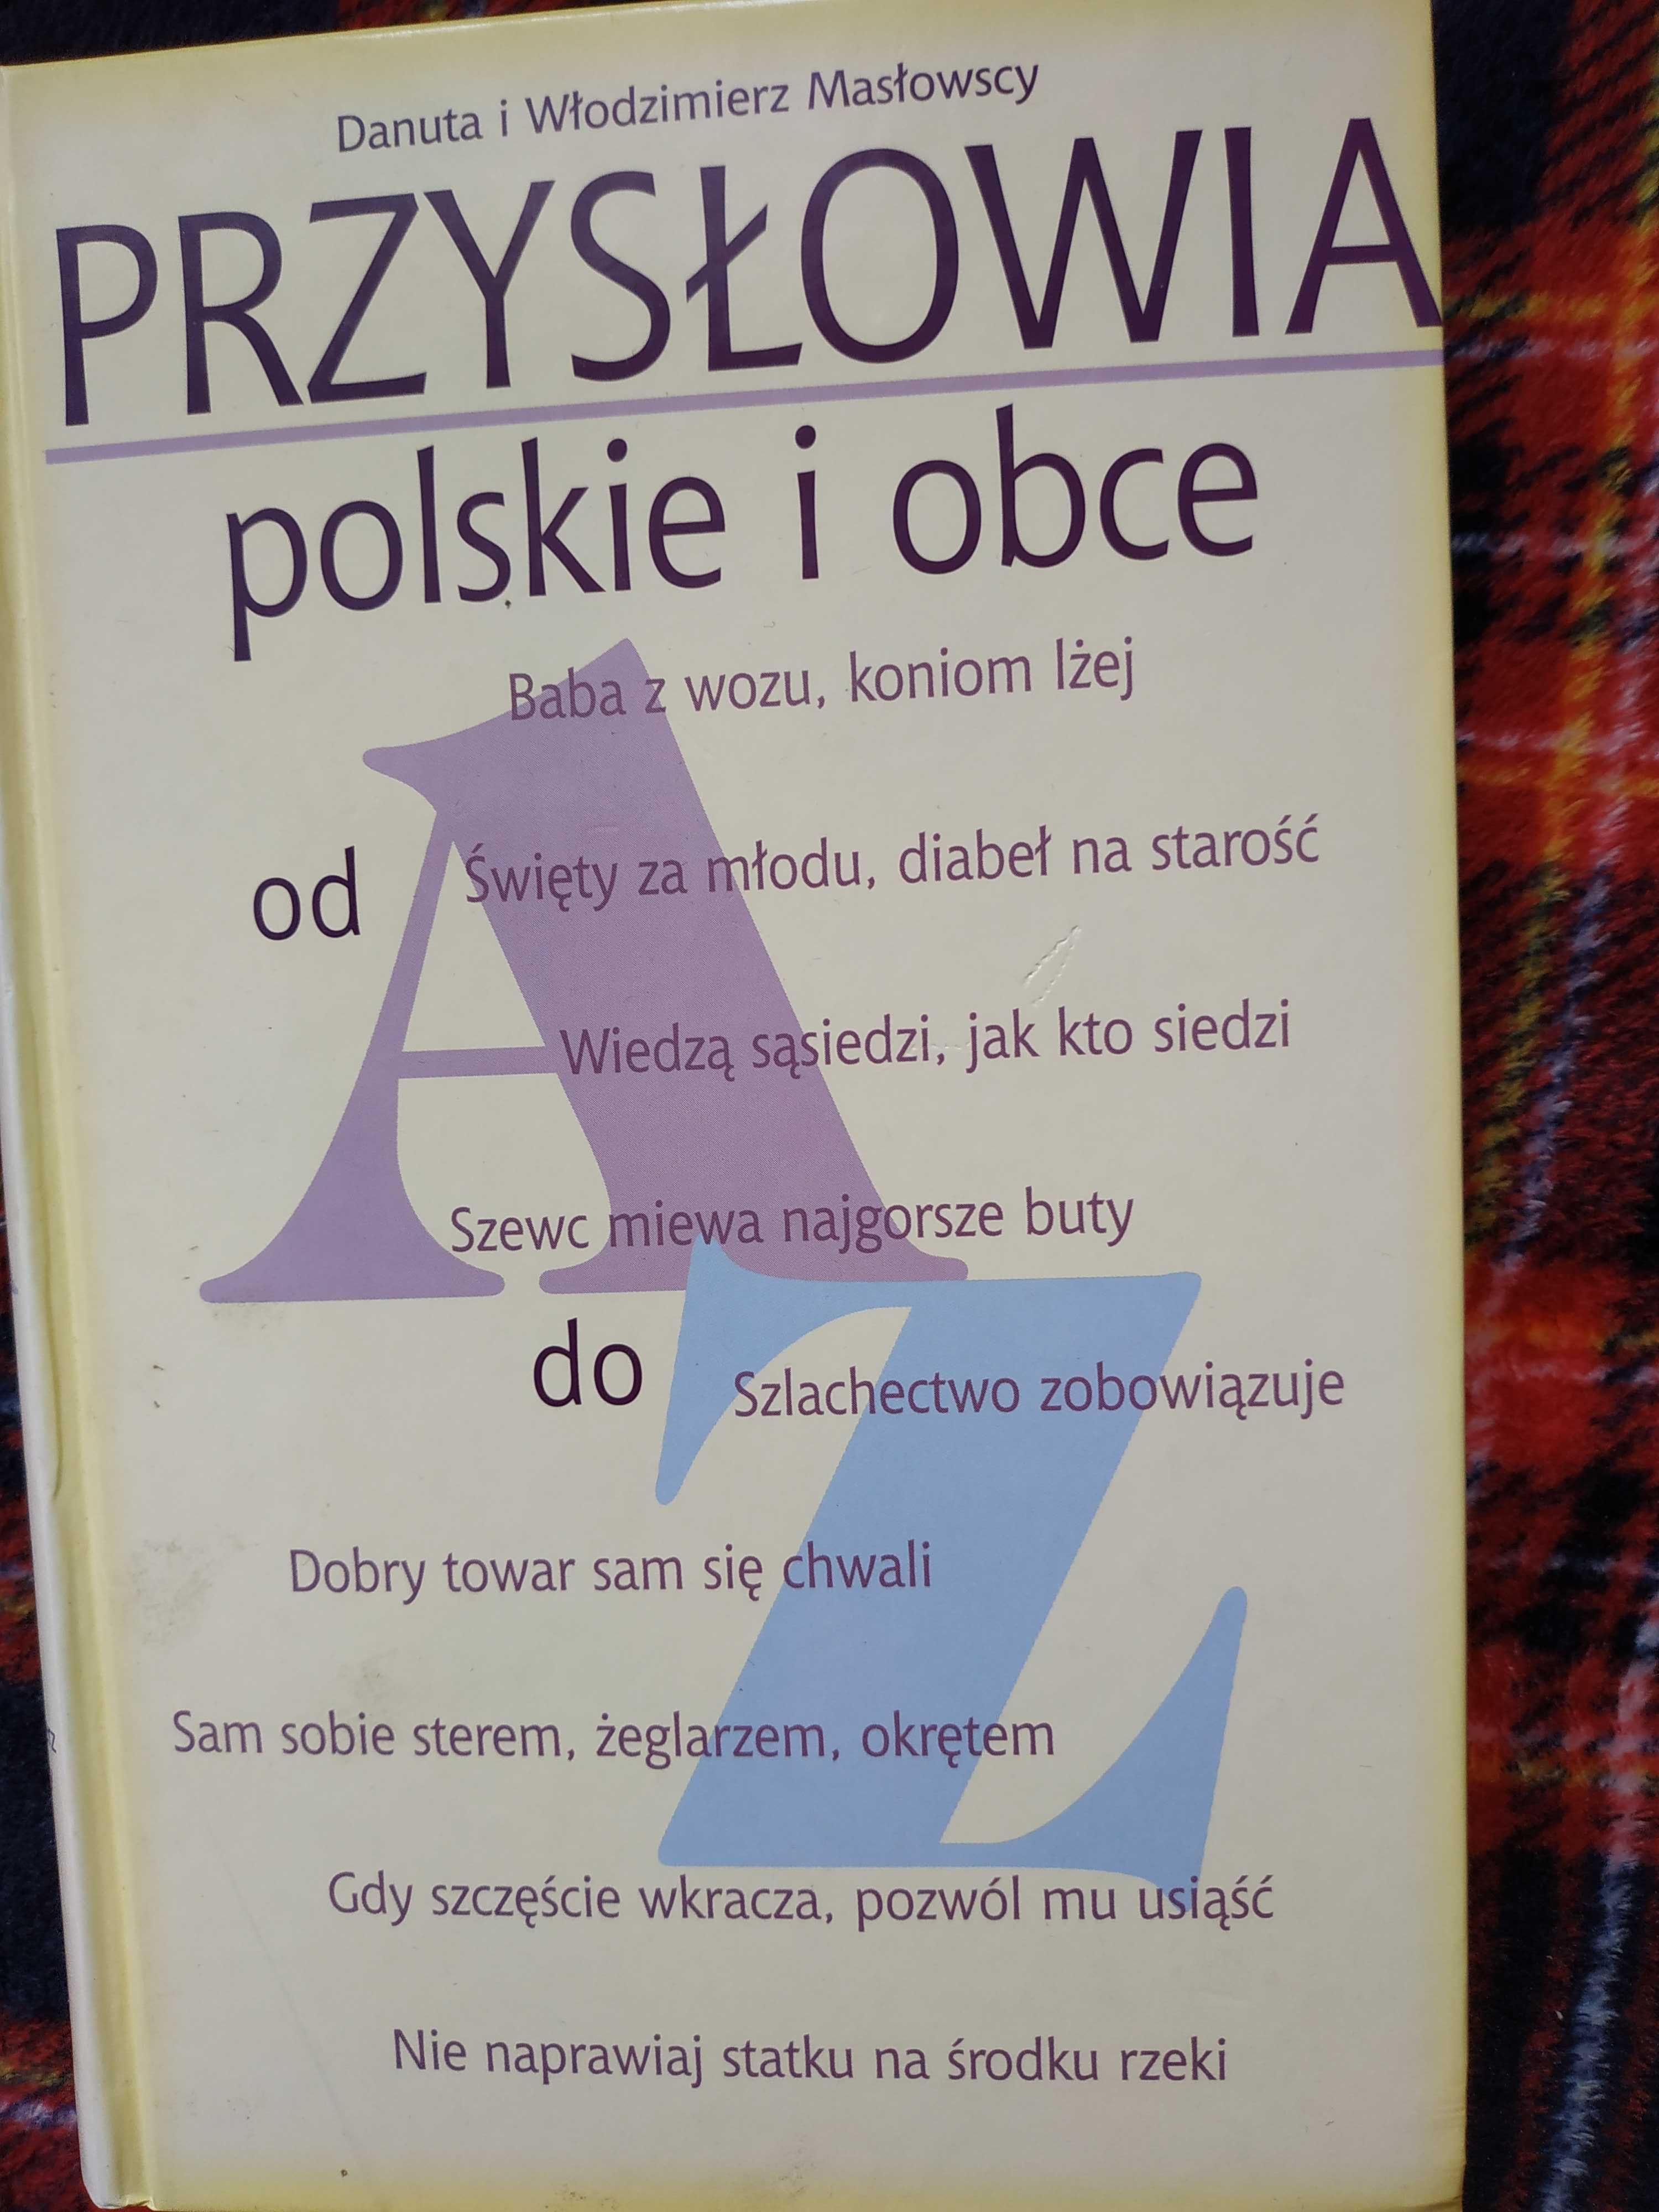 Sprzedam D. W. Masłowscy- Przysłowia polskie i obce(nowa)